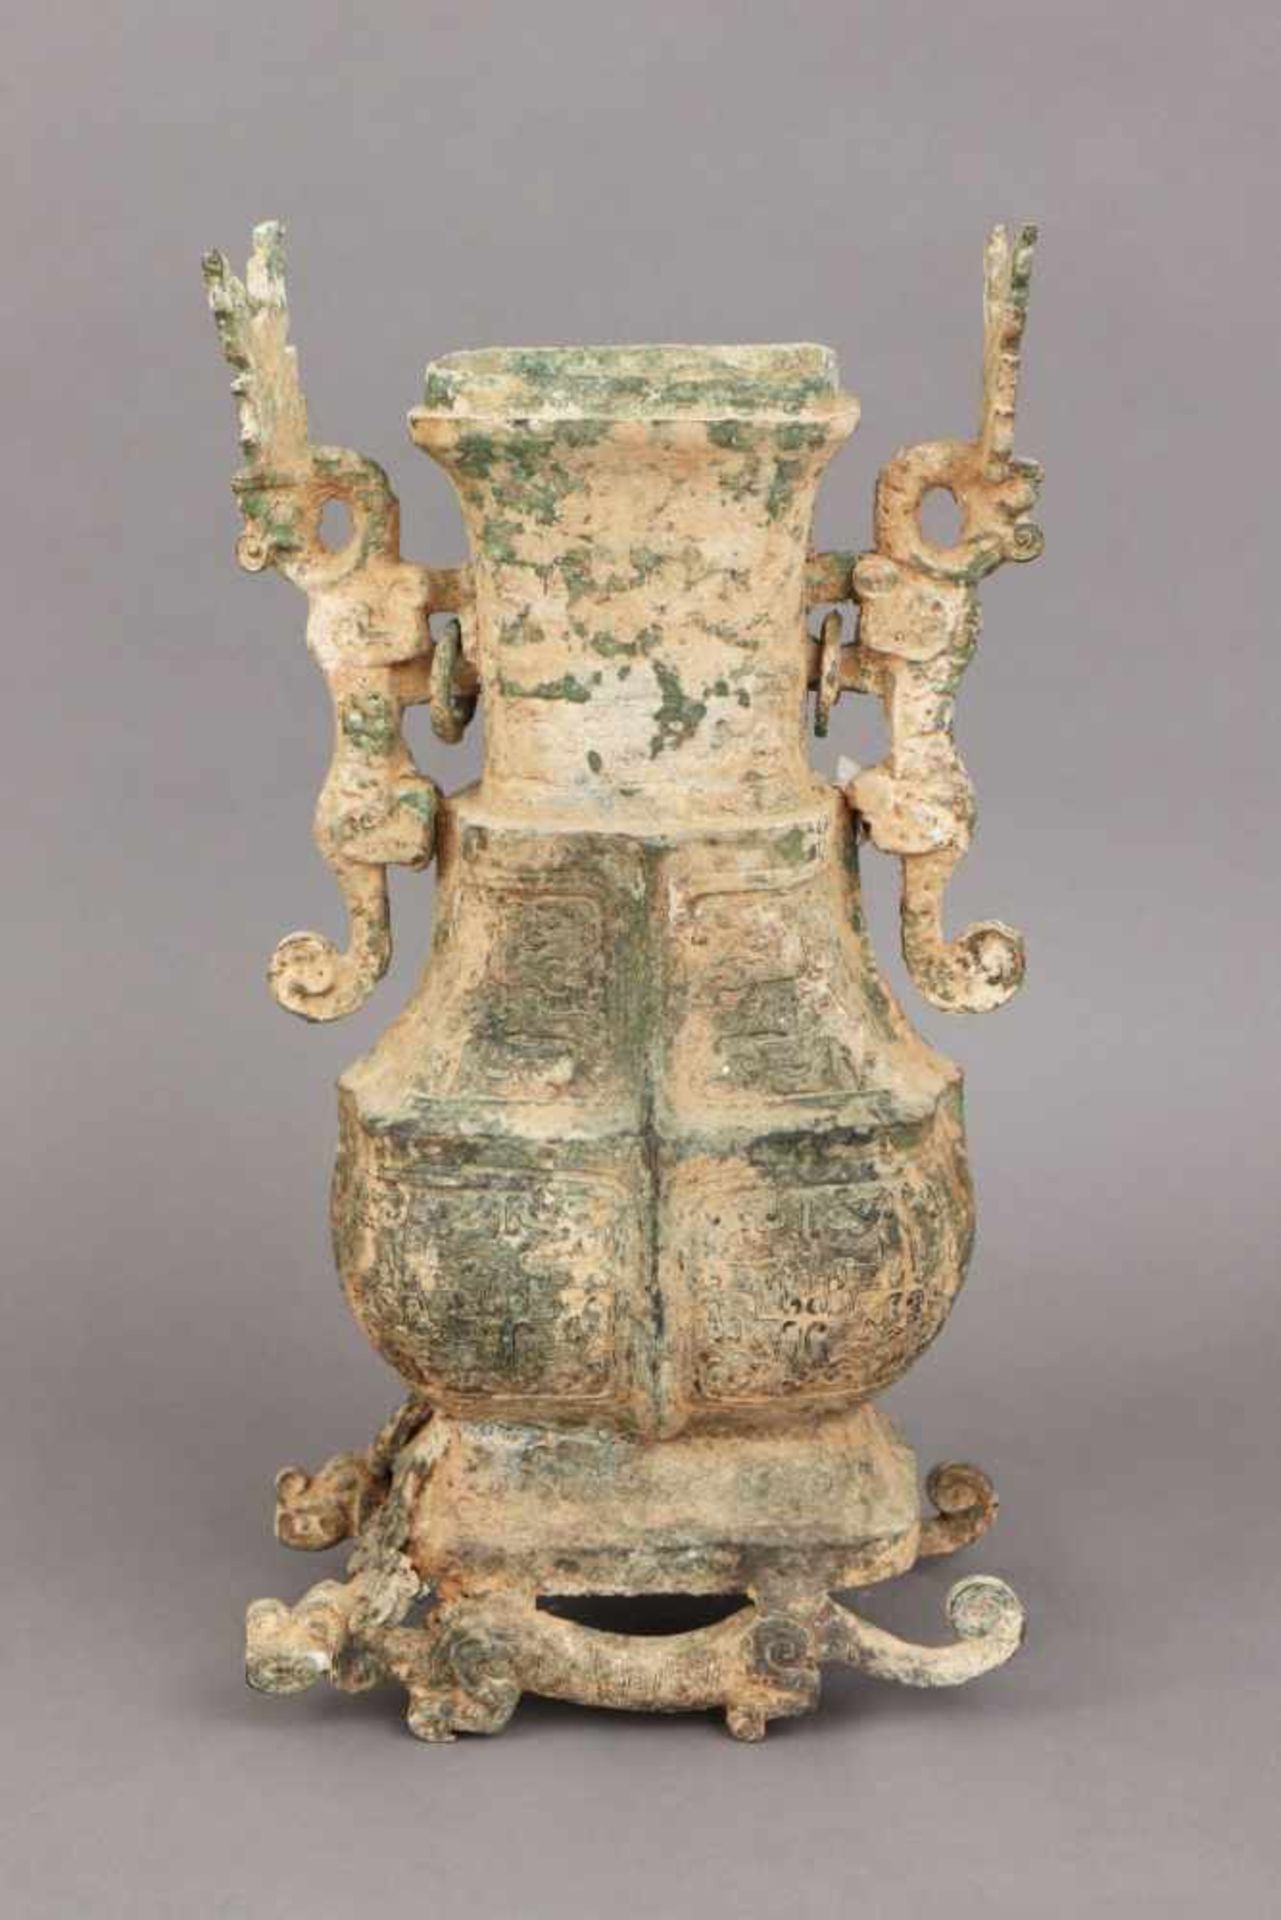 Großes chinesisches Bronze-Ritualgefäß/Weinkanne im Stile der Shang-Dynastiegrün patiniert, Alter - Bild 2 aus 3